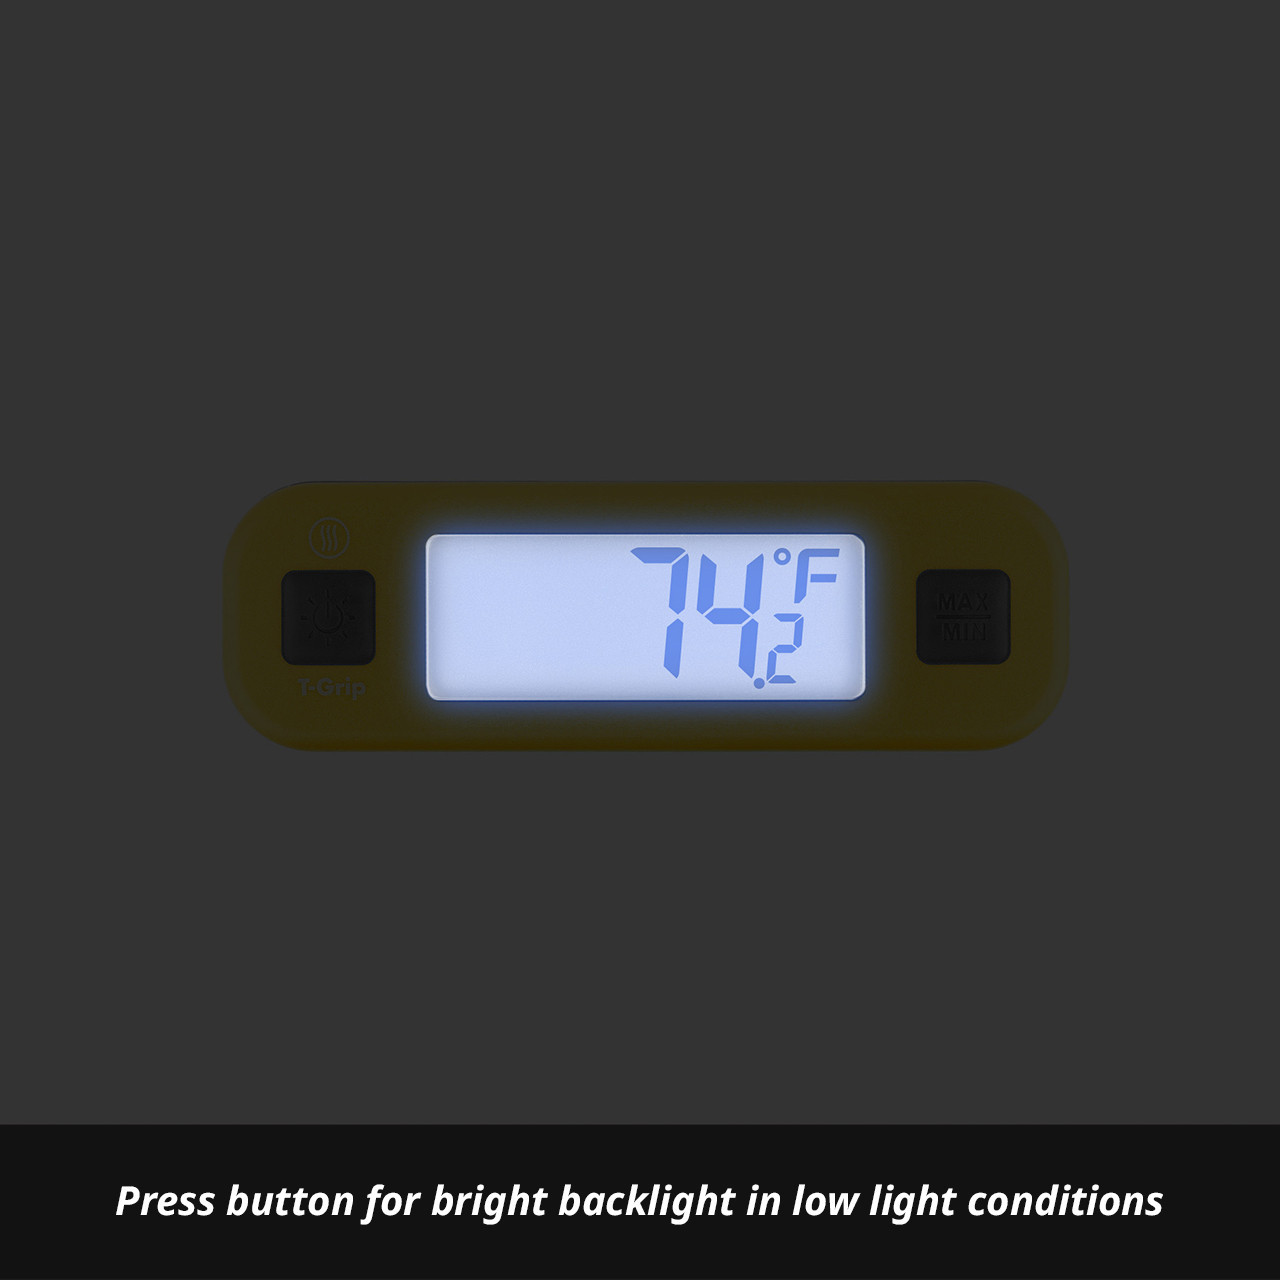 Thermometer Press Button Max-Min